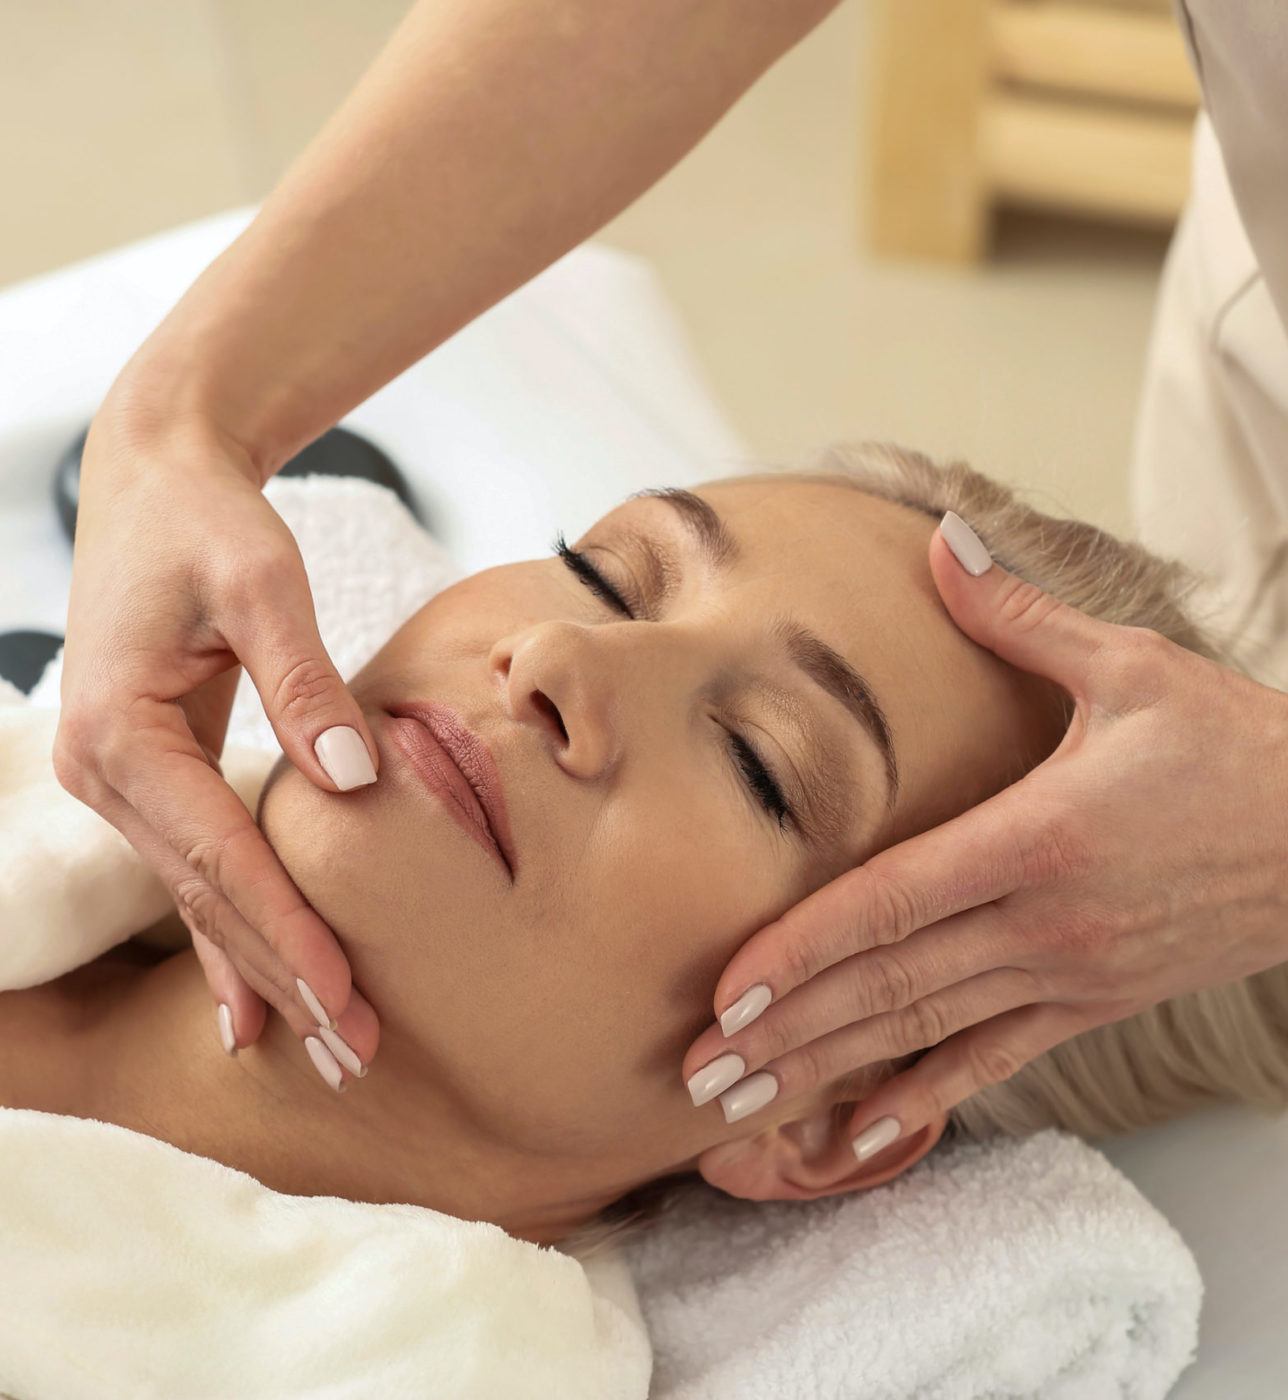 Mature woman receiving face massage in beauty salon